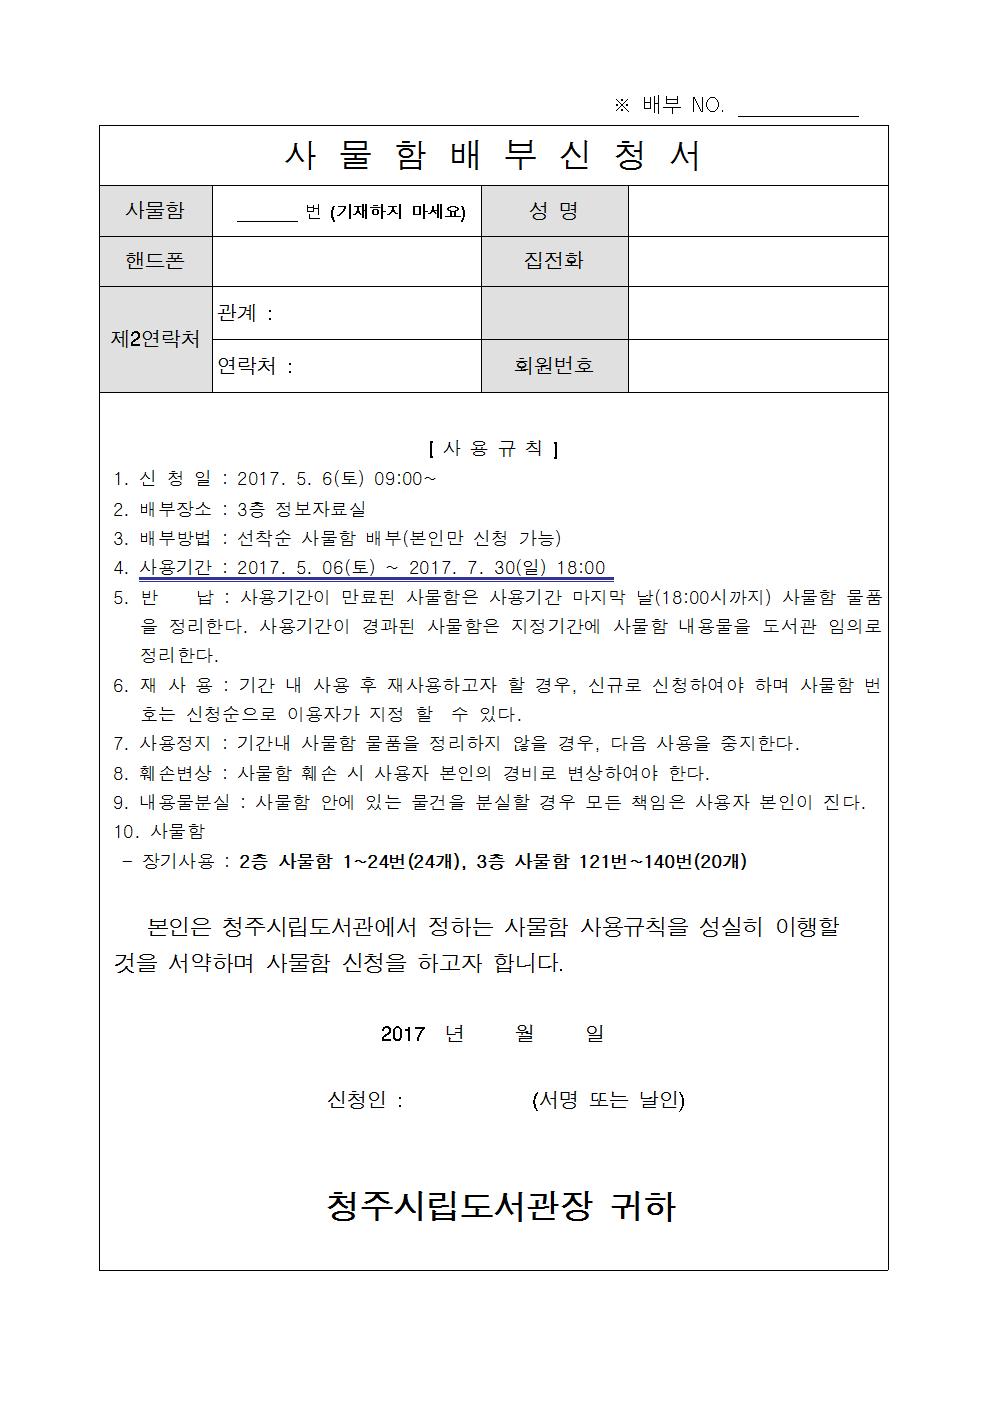 청주시립도서관 사물함 장기사용(2017. 5월 ~ 2017. 7월)신청안내